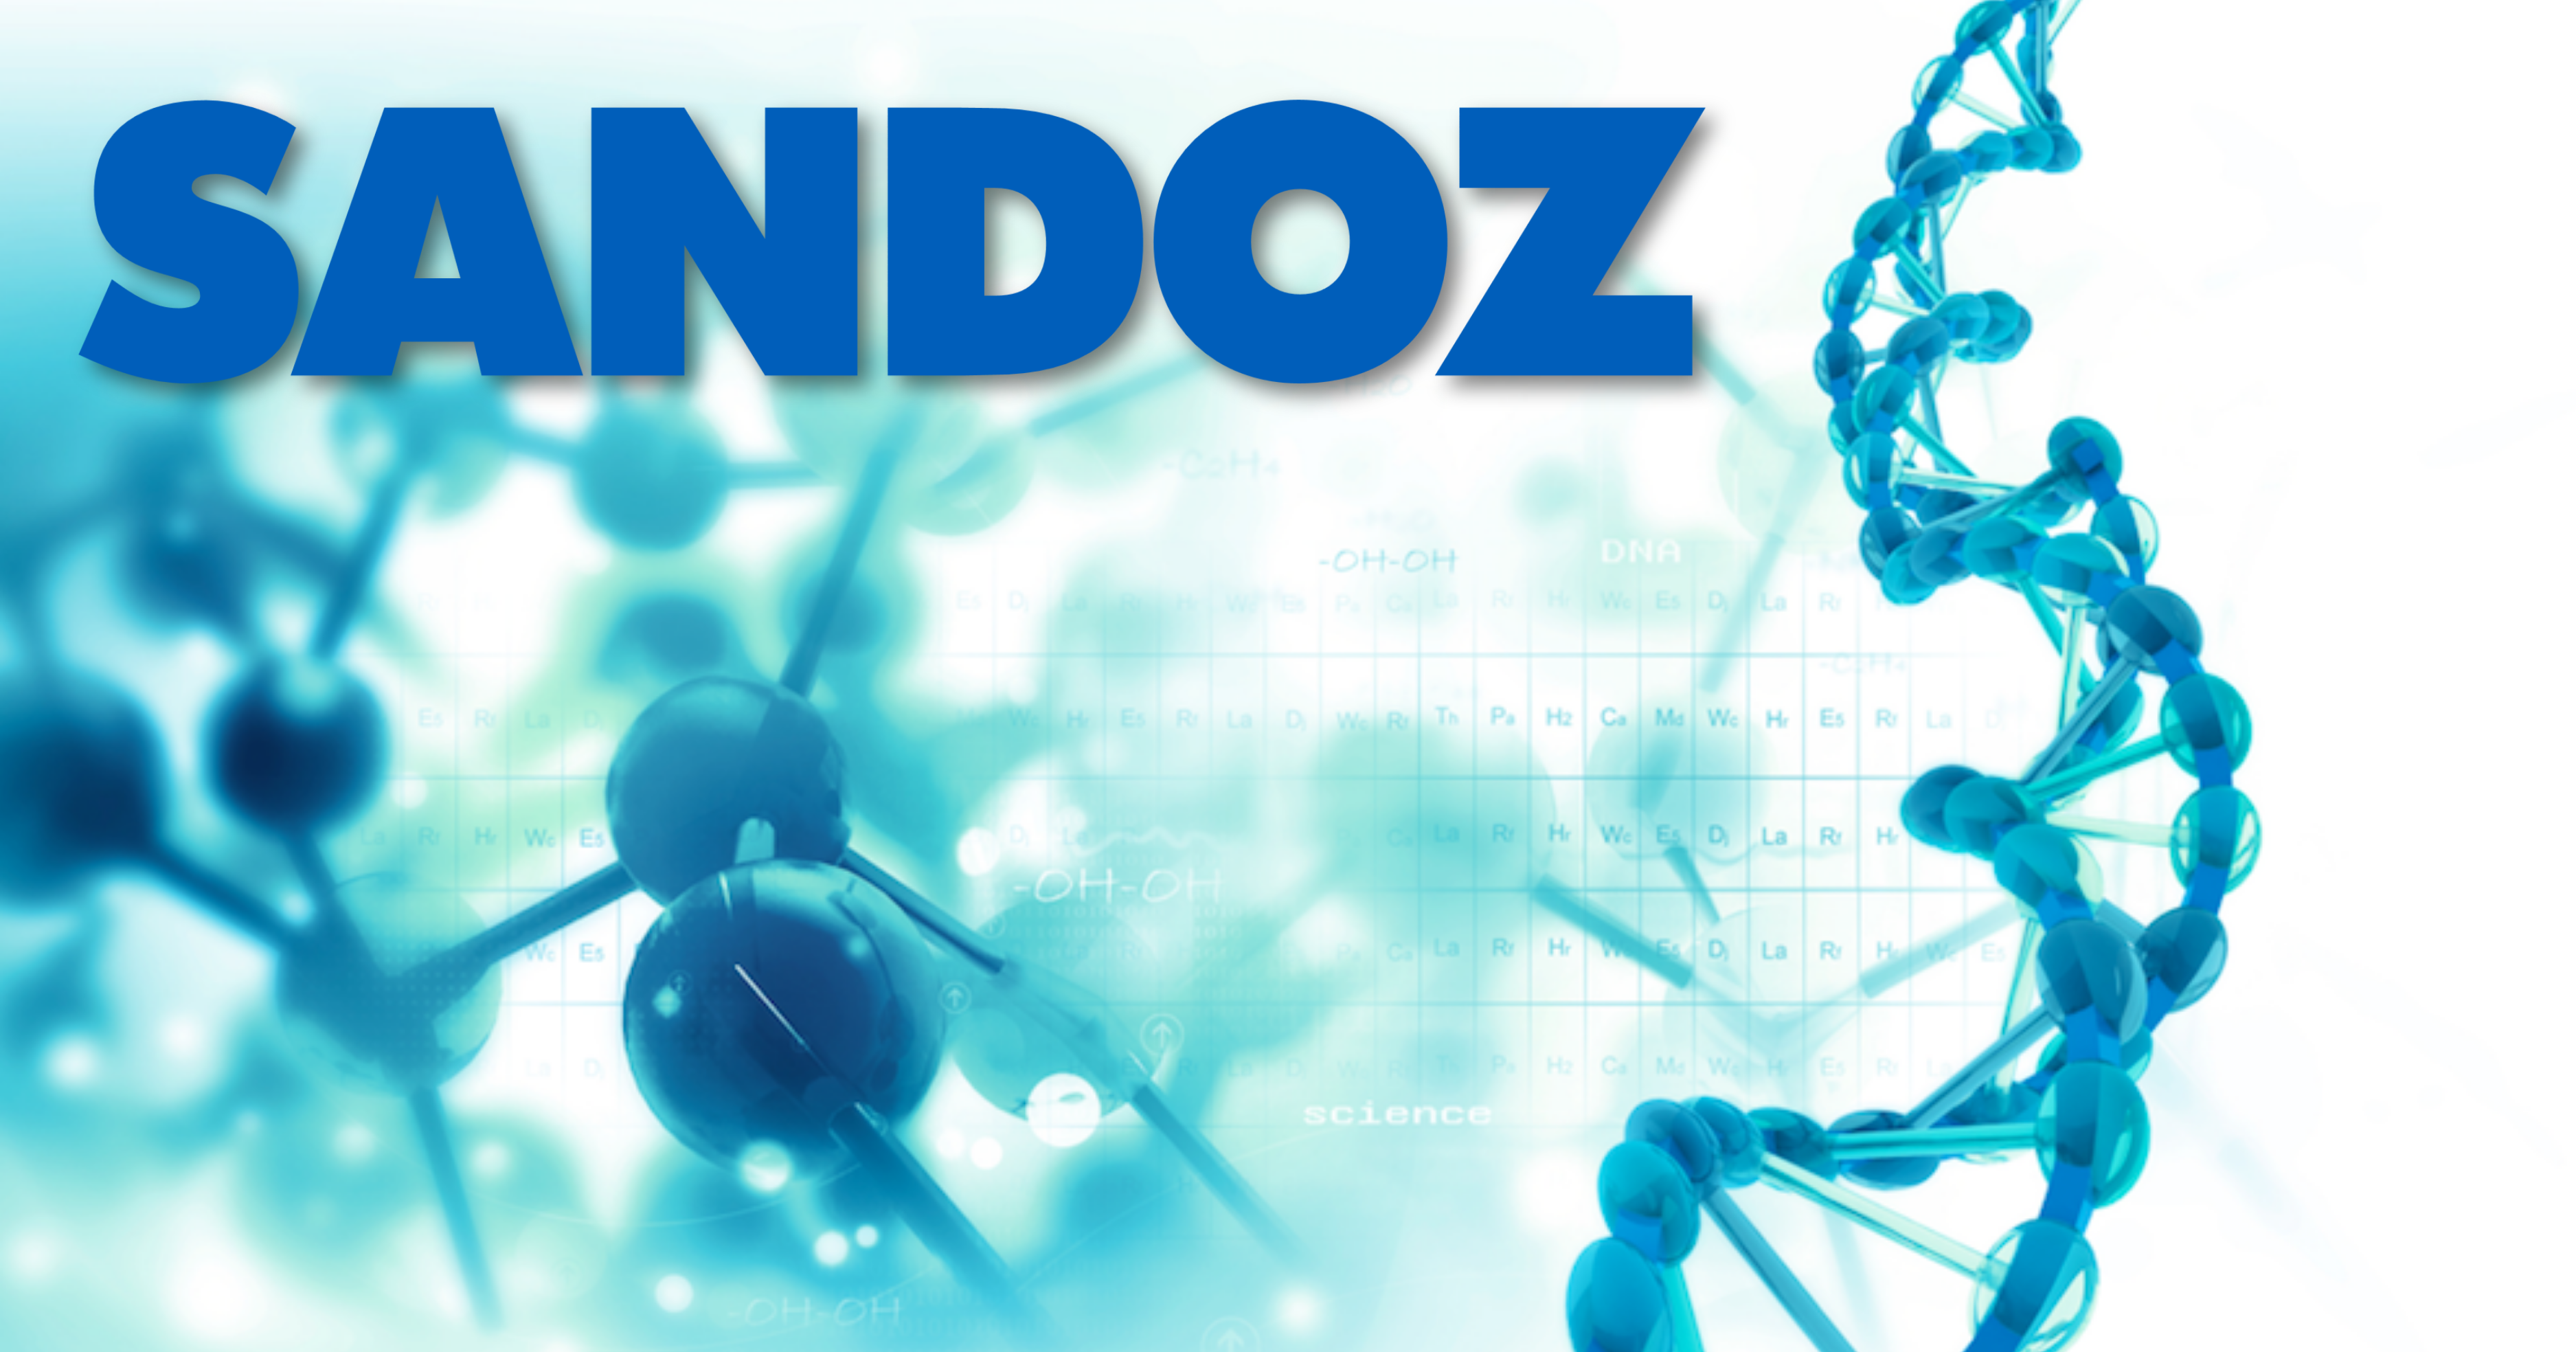 sandoz logo over image of molecule